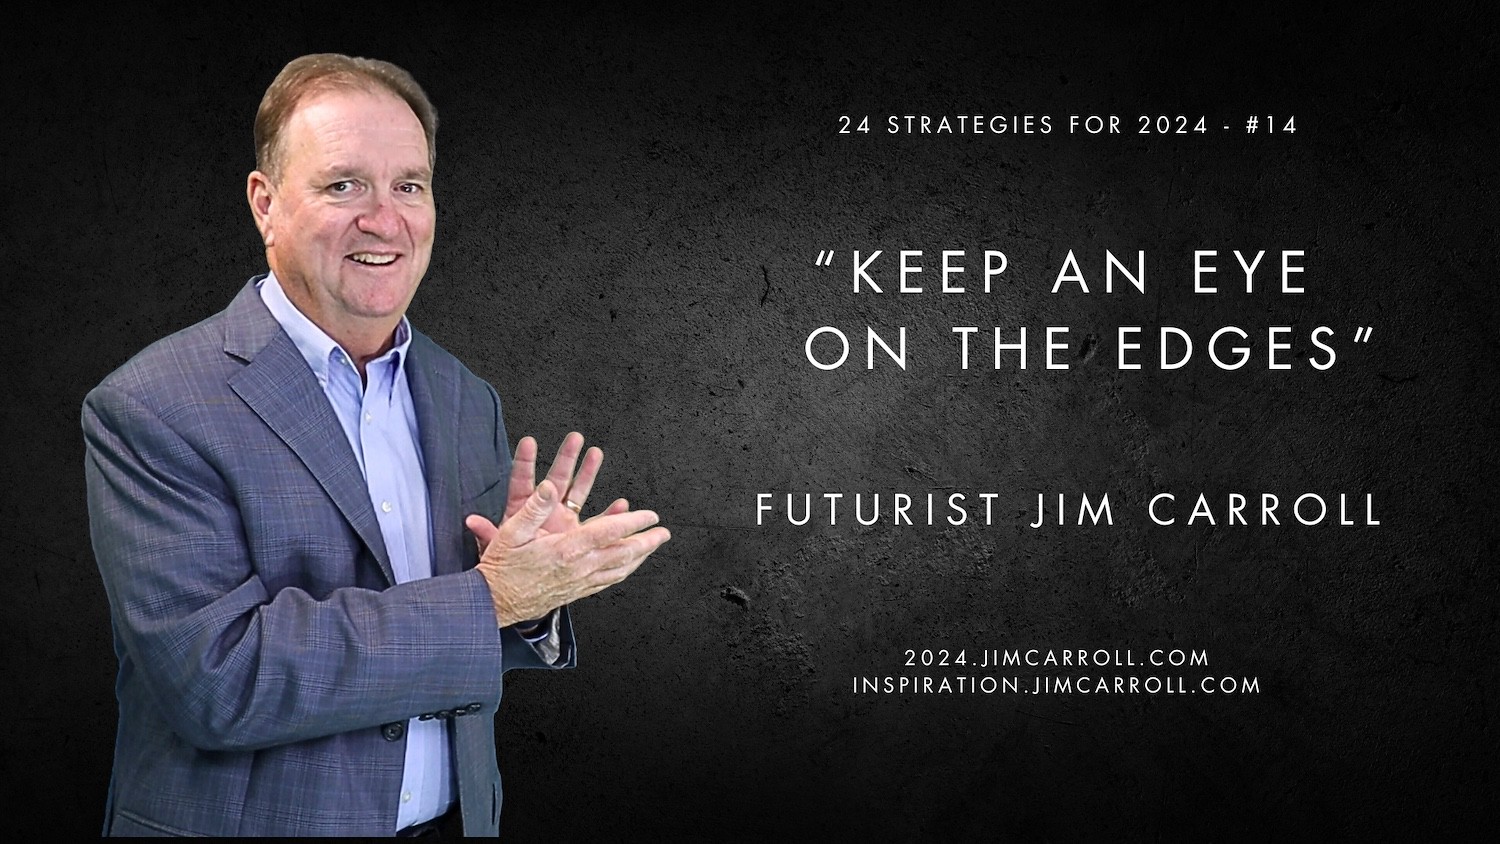 "Keep an eye on the edges" - Futurist Jim Carroll